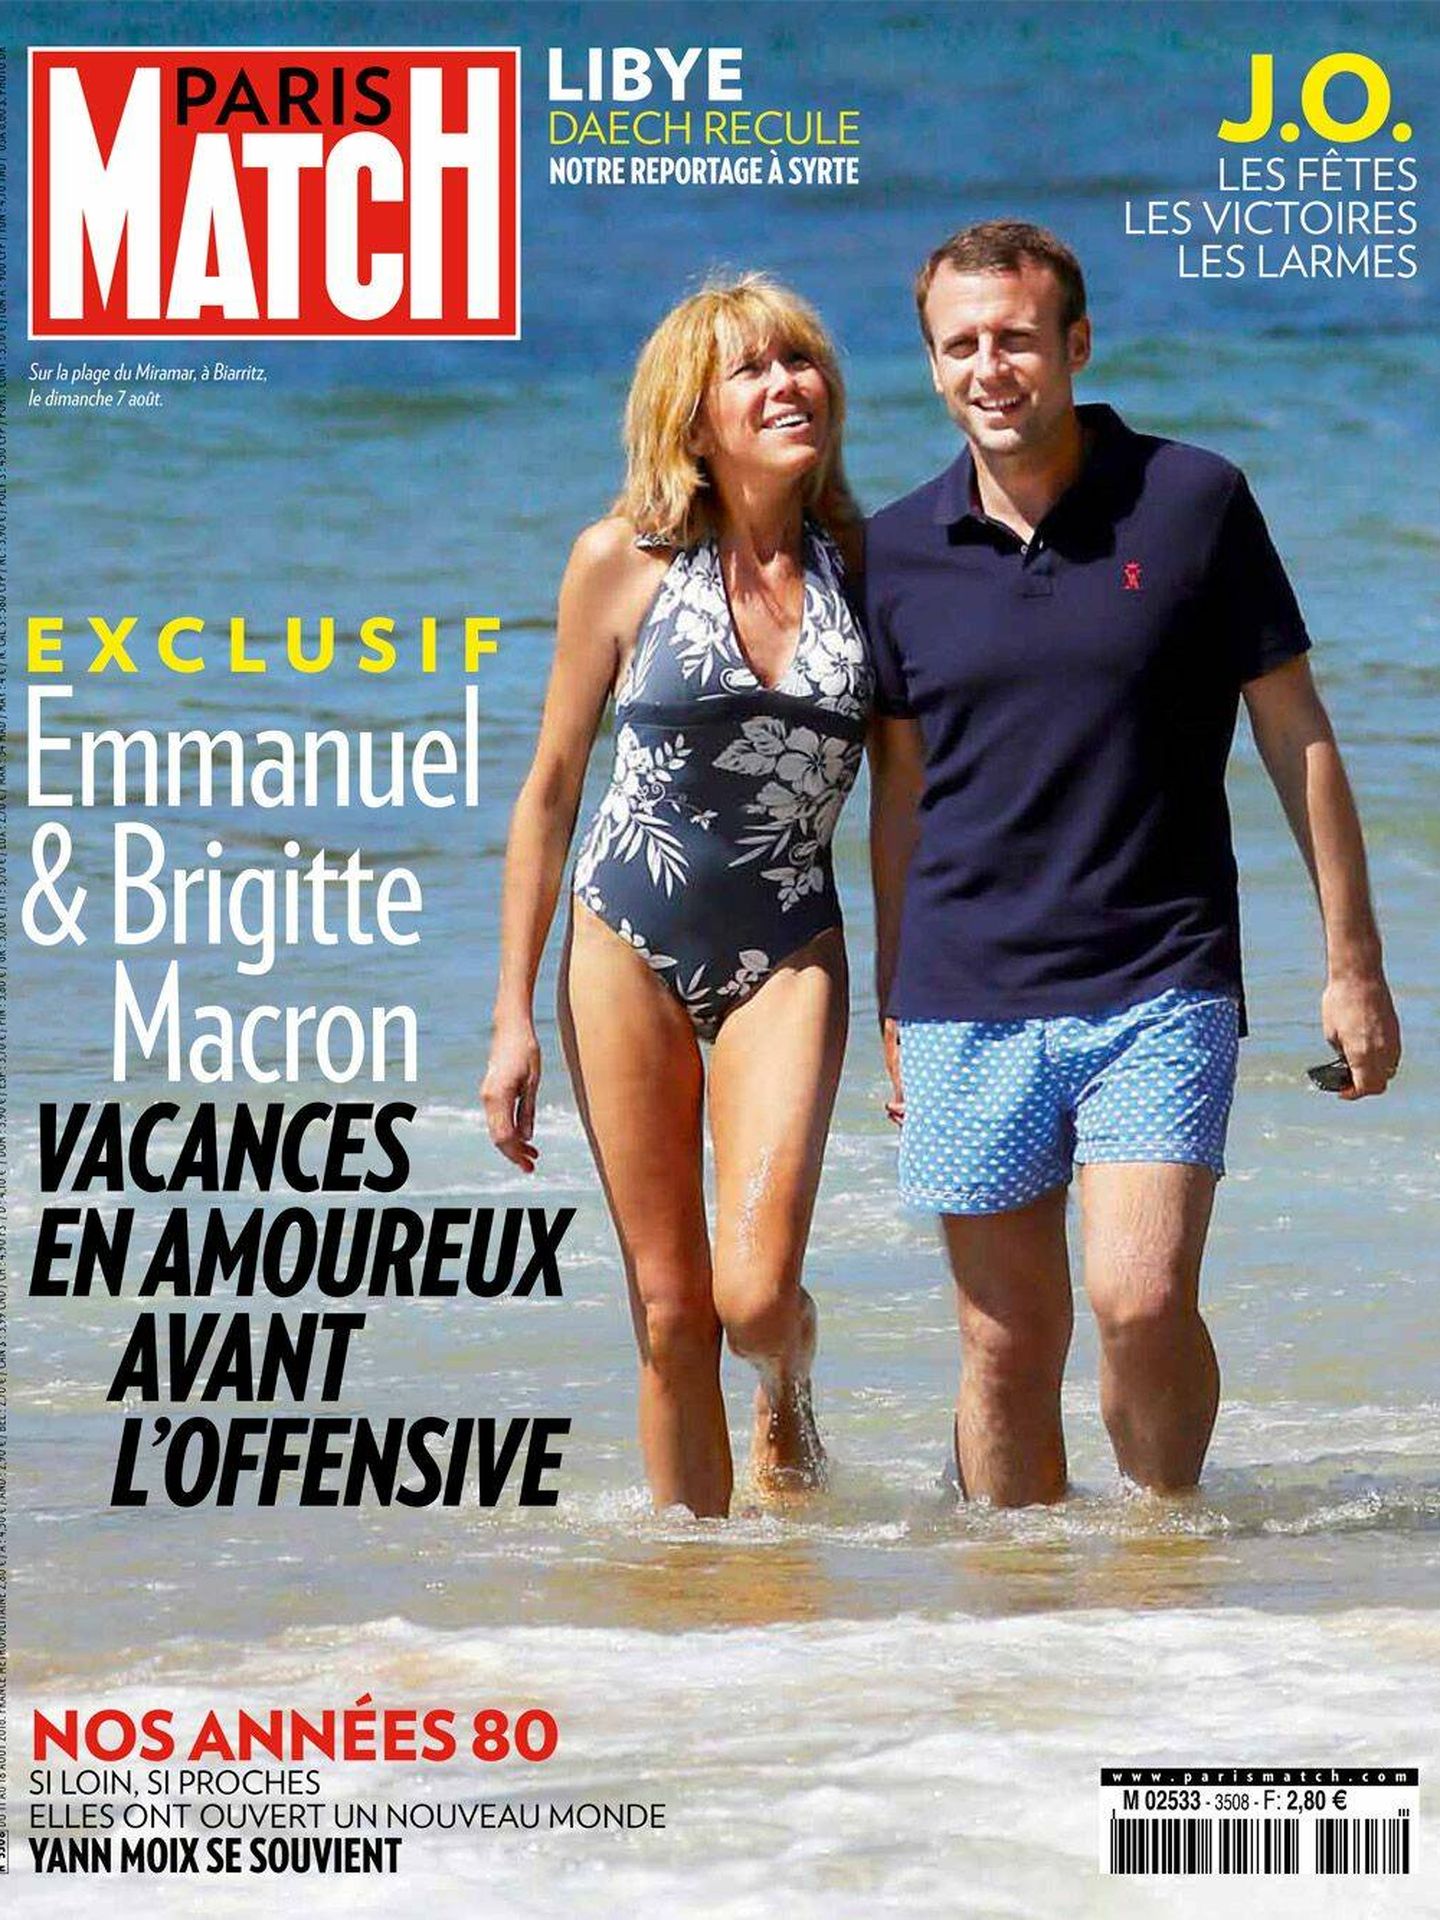 Las vacaciones de los Macron en la portada de 'Paris Match'.